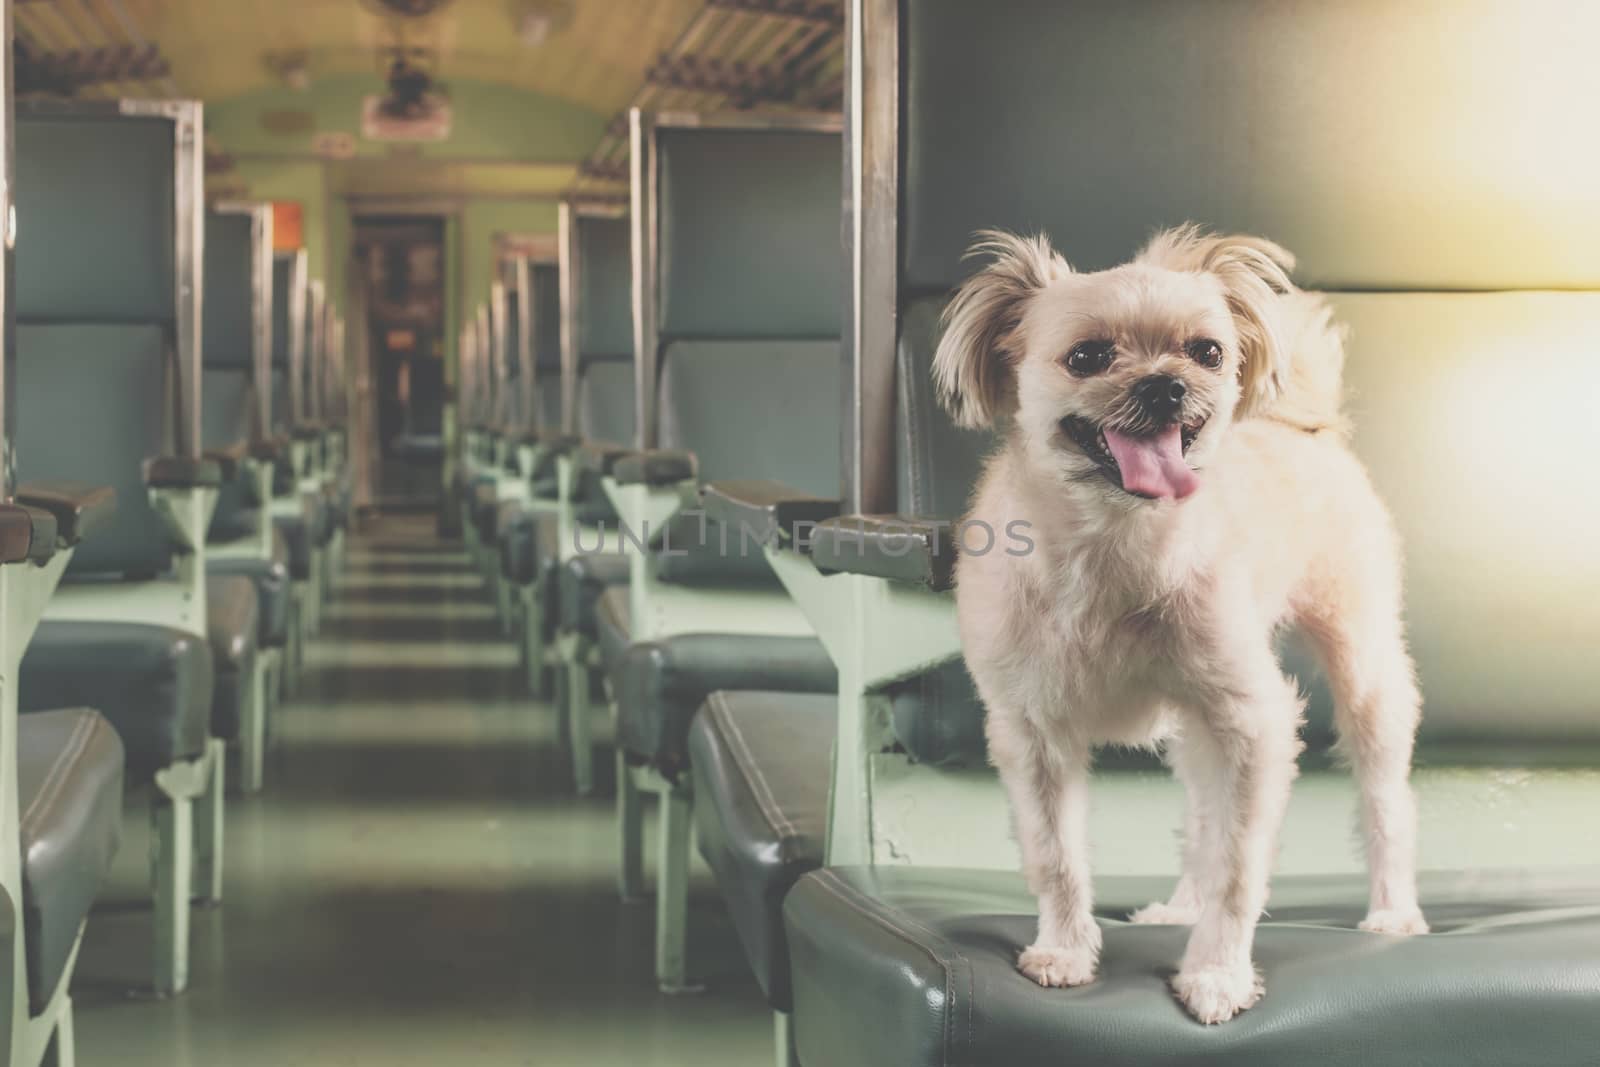 Dog so cute inside a railway train wait for travel by PongMoji